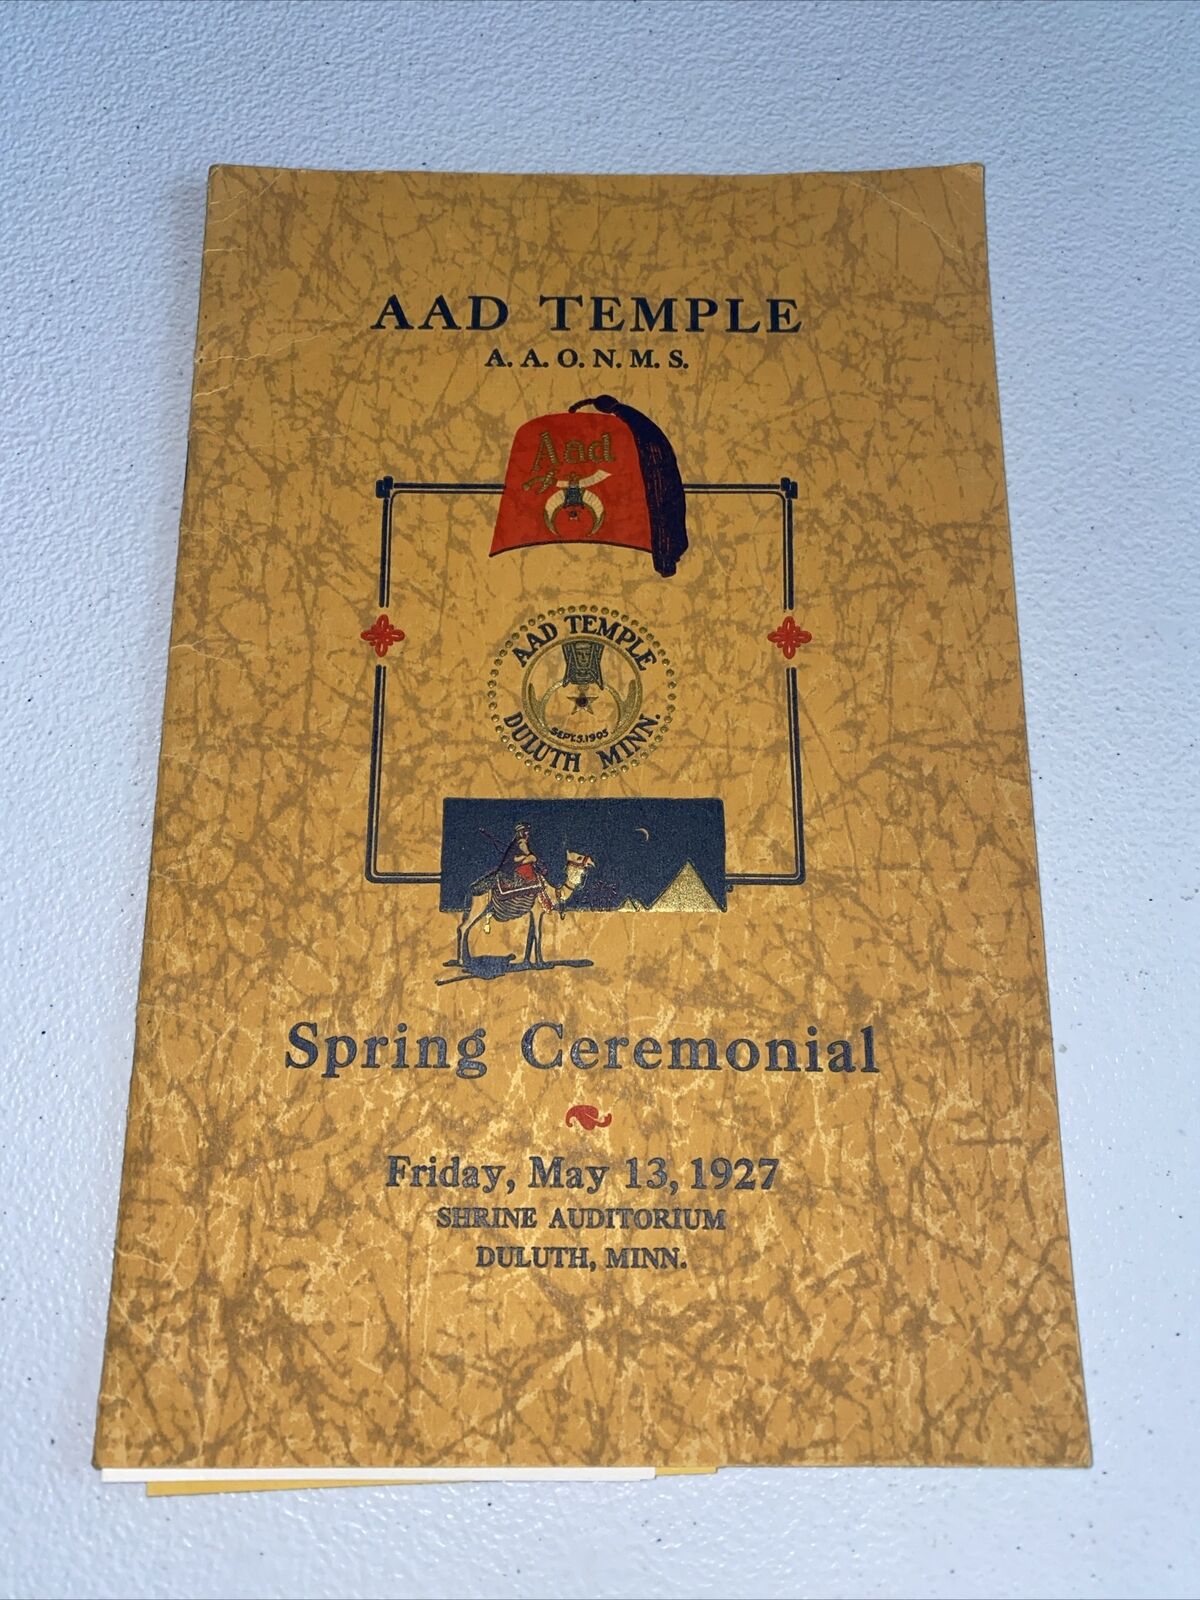 Vintage 1927 Temple AAD Midwest Shrine Duluth Minnesota Souvenir Program Extras